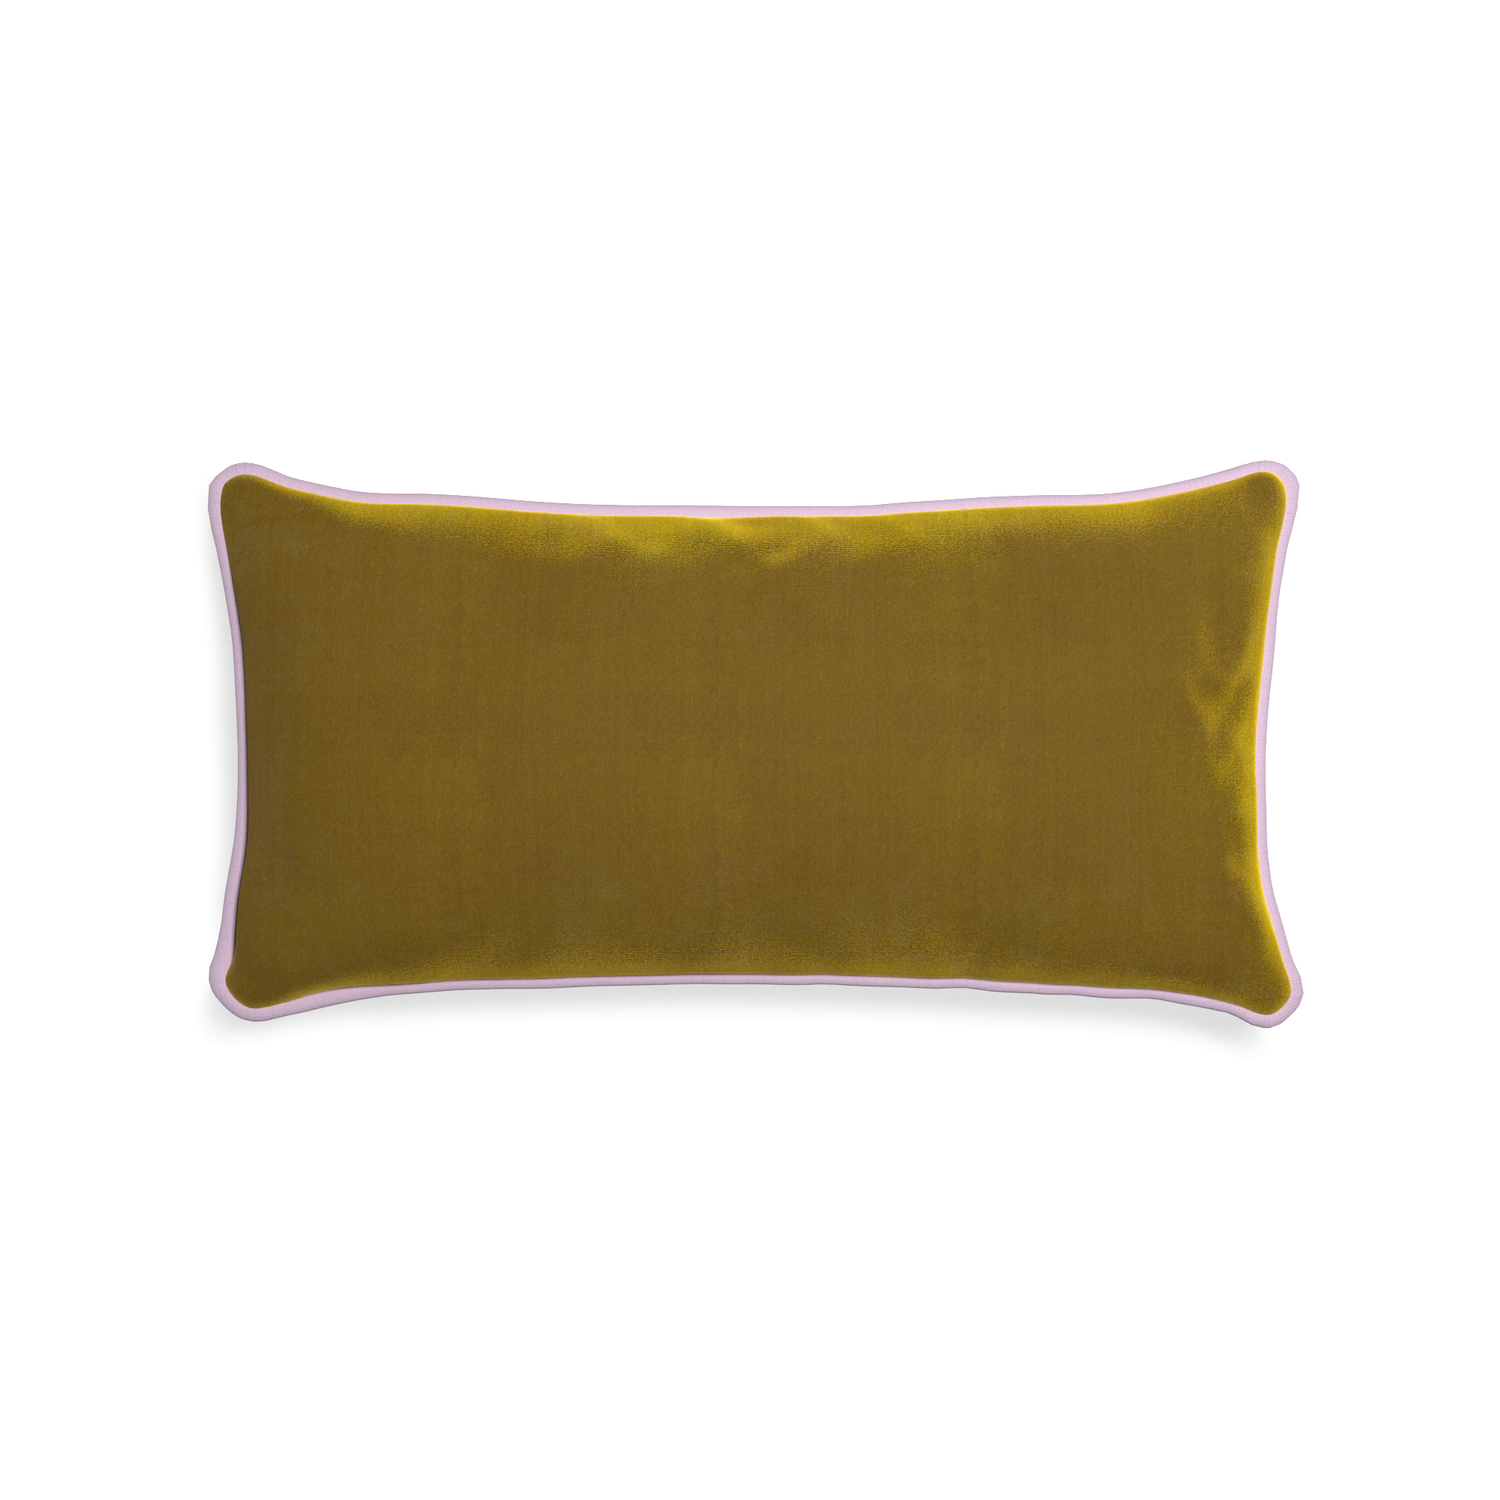 Midi-lumbar citron velvet custom gold velvetpillow with l piping on white background